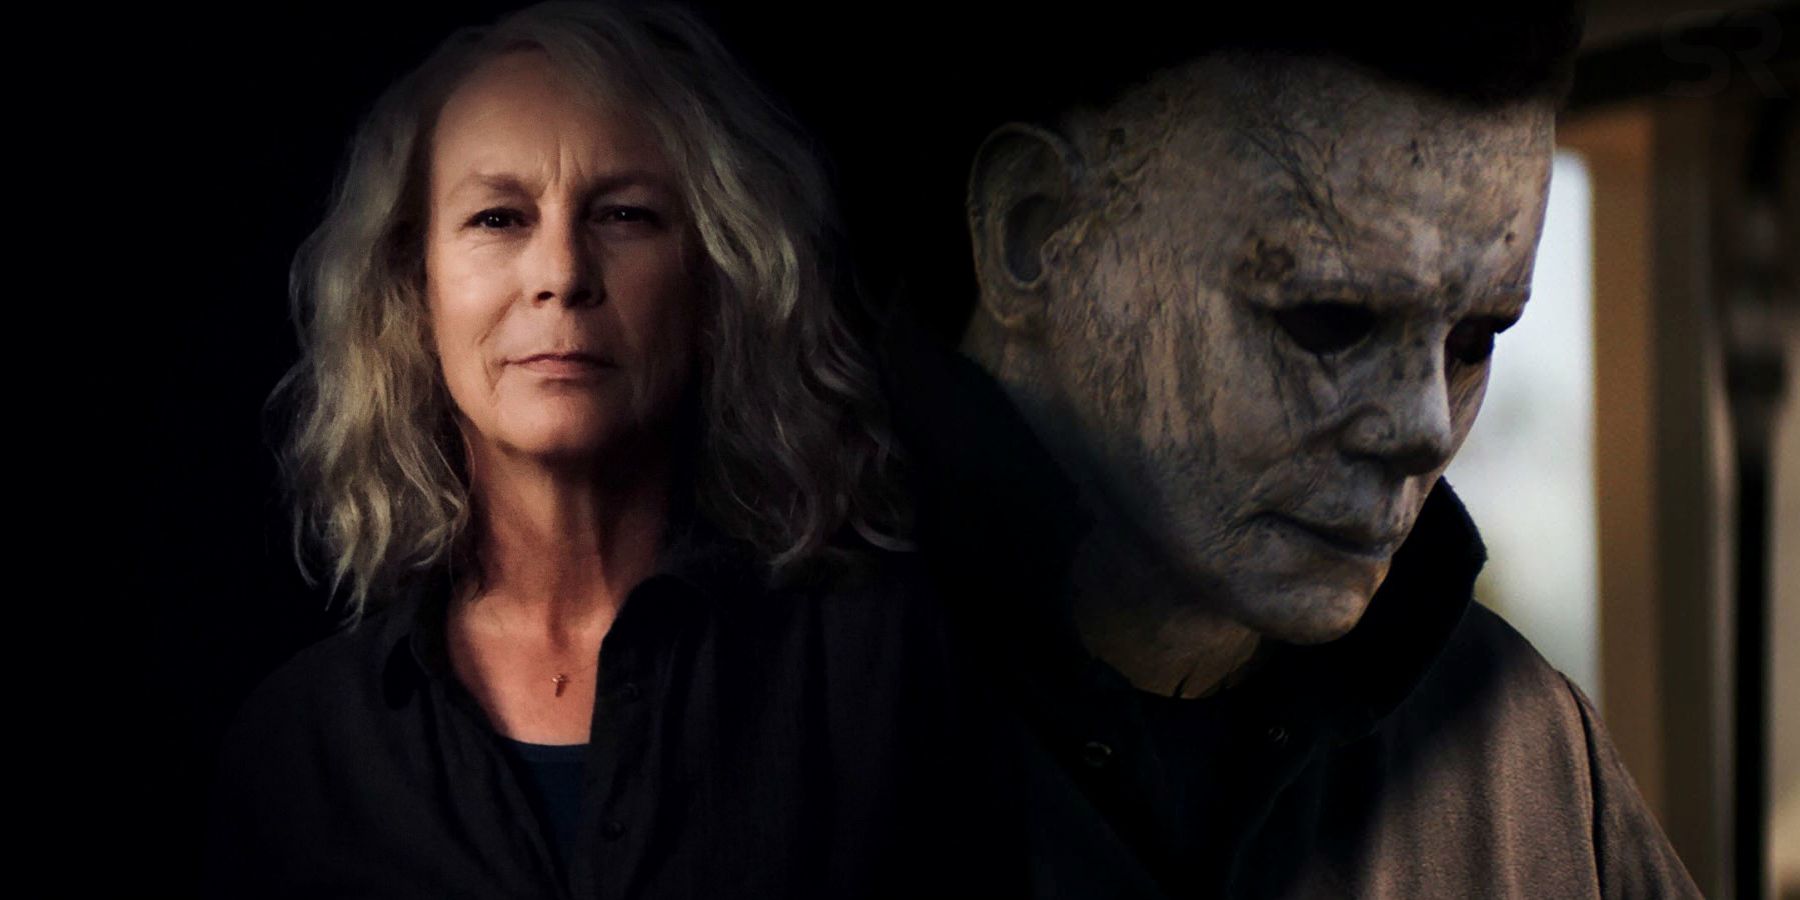 Imagem mesclada mostrando Laurie e Michael Myers no Halloween 2018.